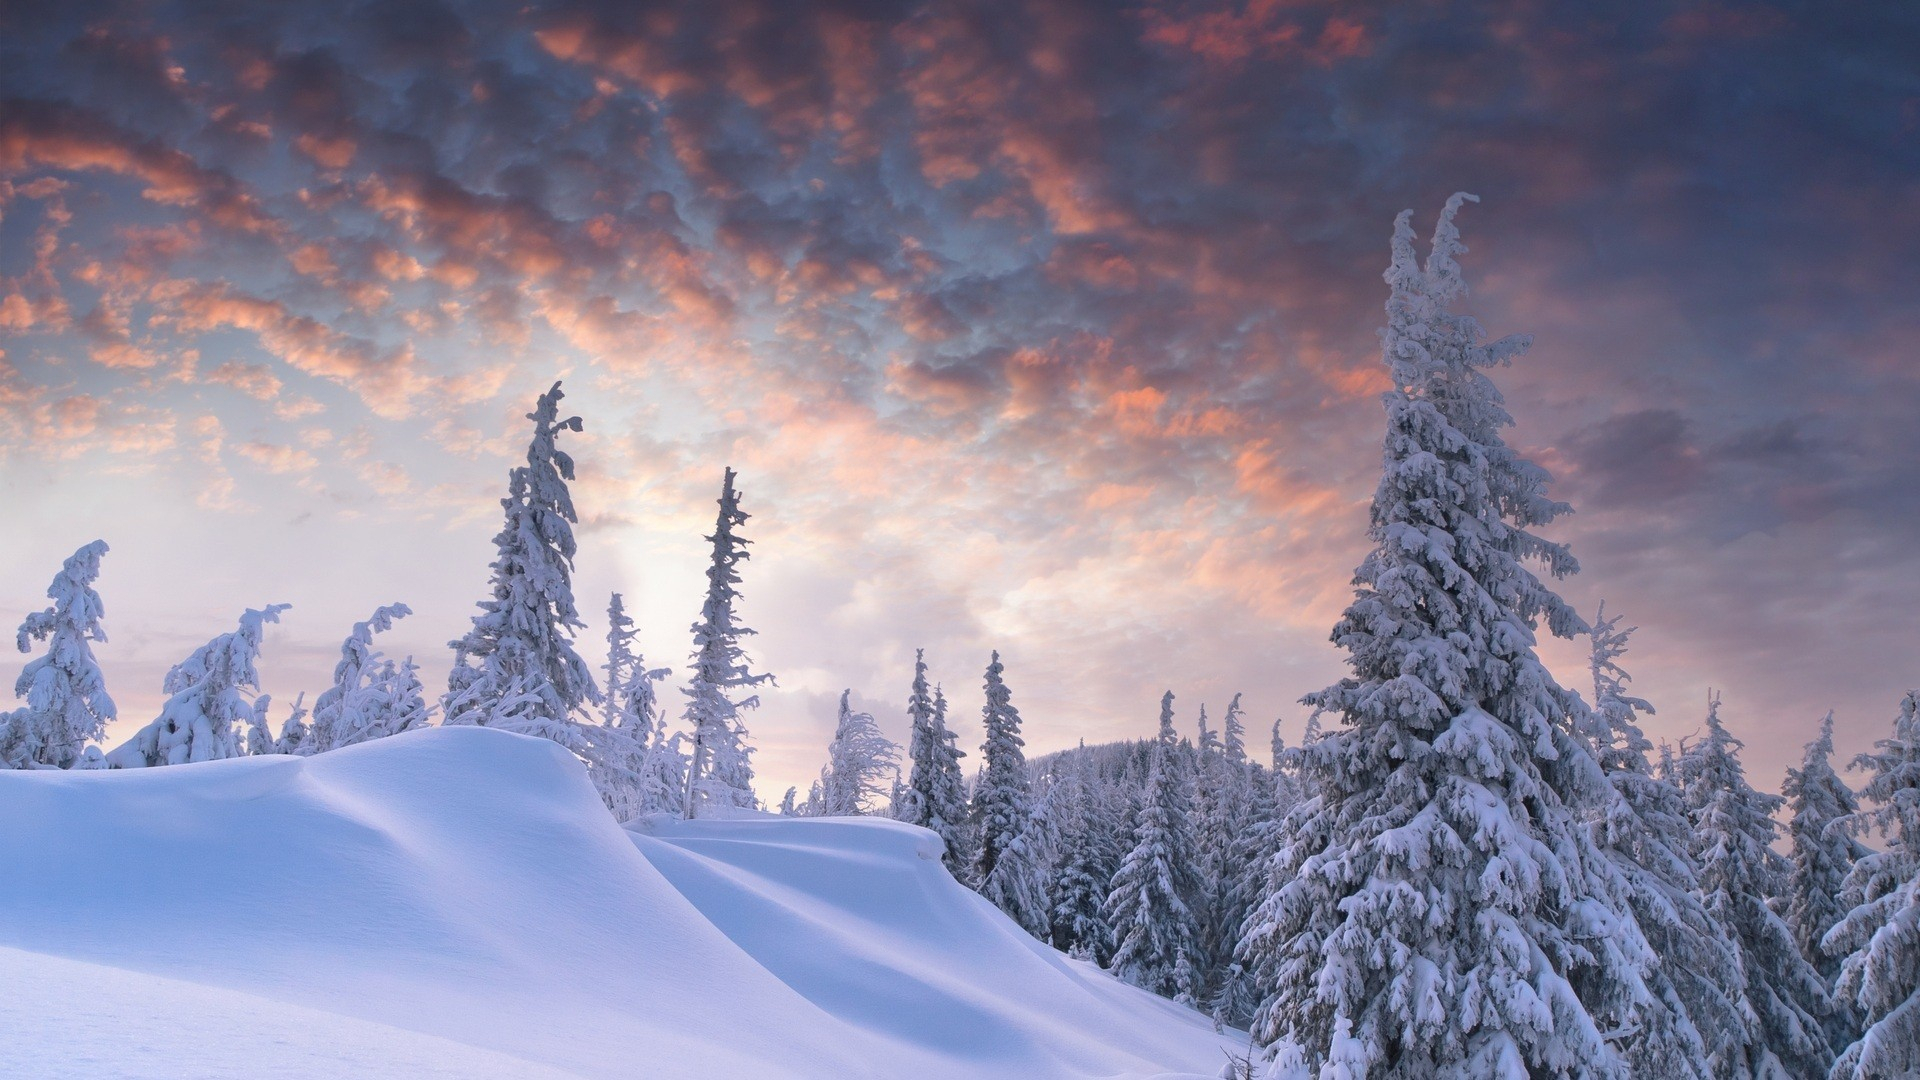 10 Most Popular Snowy Winter Scene Wallpaper FULL HD 1920×1080 For PC Desktop